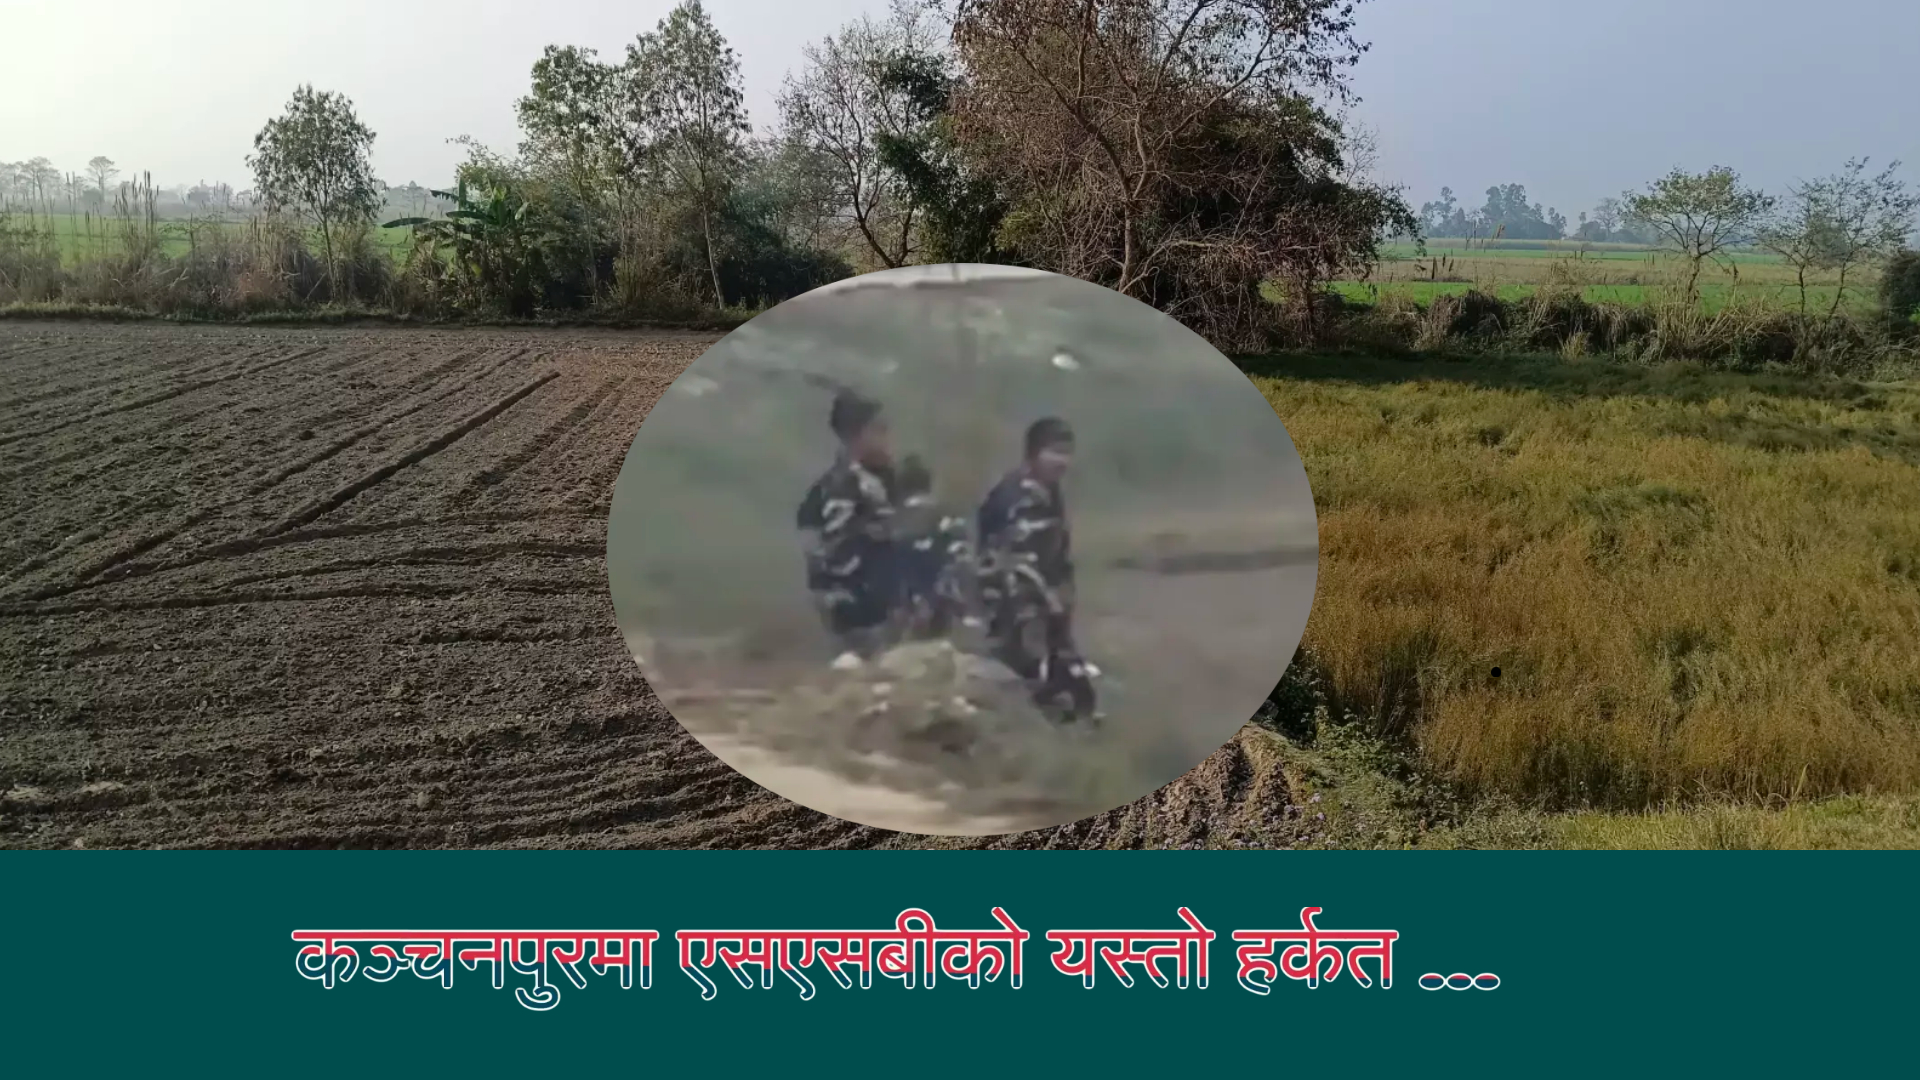 नेपाली भूमिमा बिना जानकारी हतियारसहित किन आयो भारतीय एसएसबी ? (भिडियो सहित)